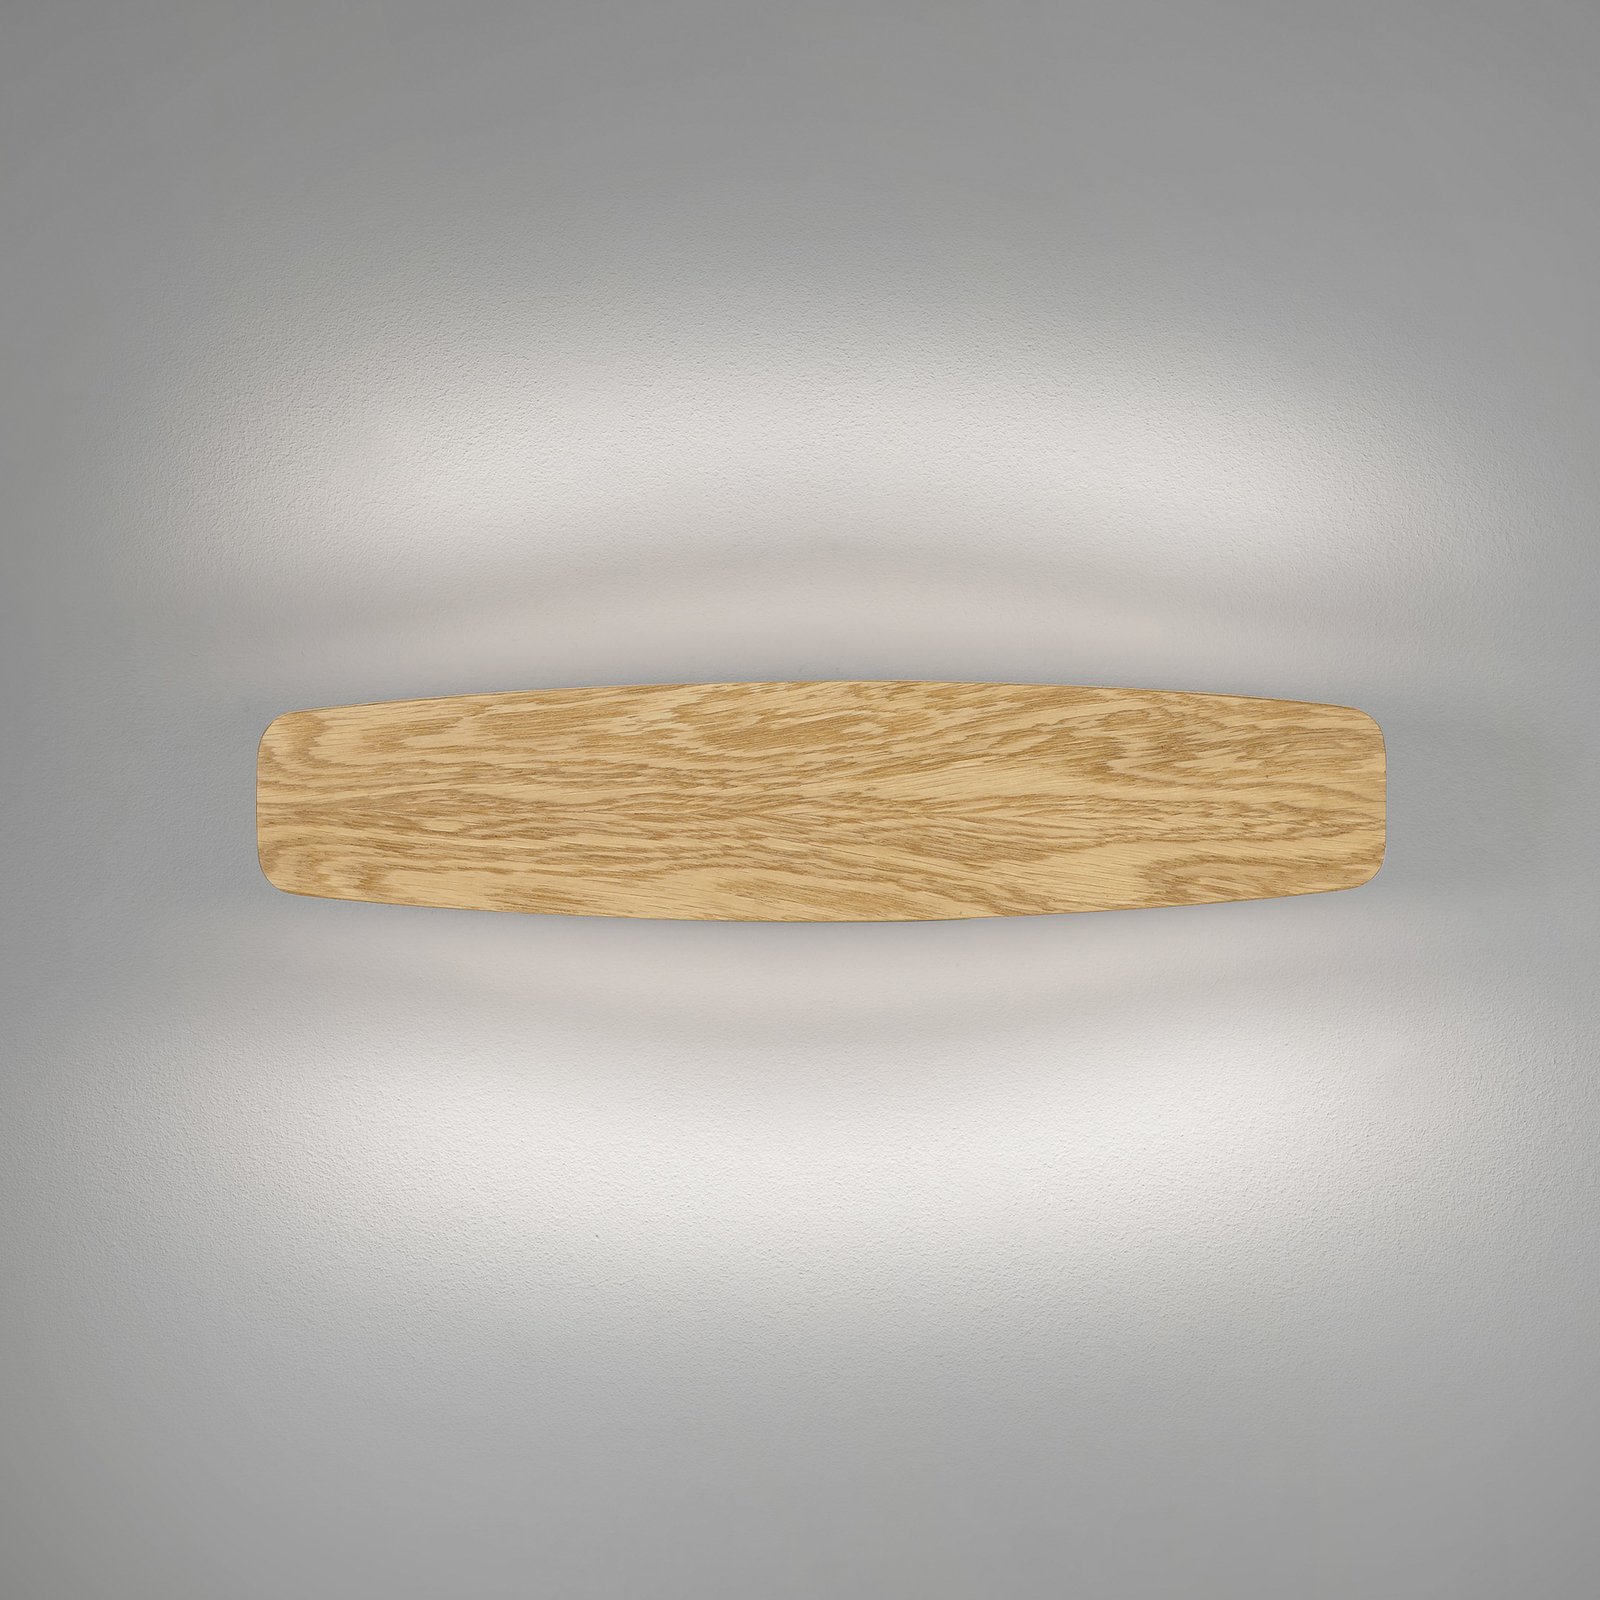 Rothfels Persida LED fali világítás, tölgy, 48 cm